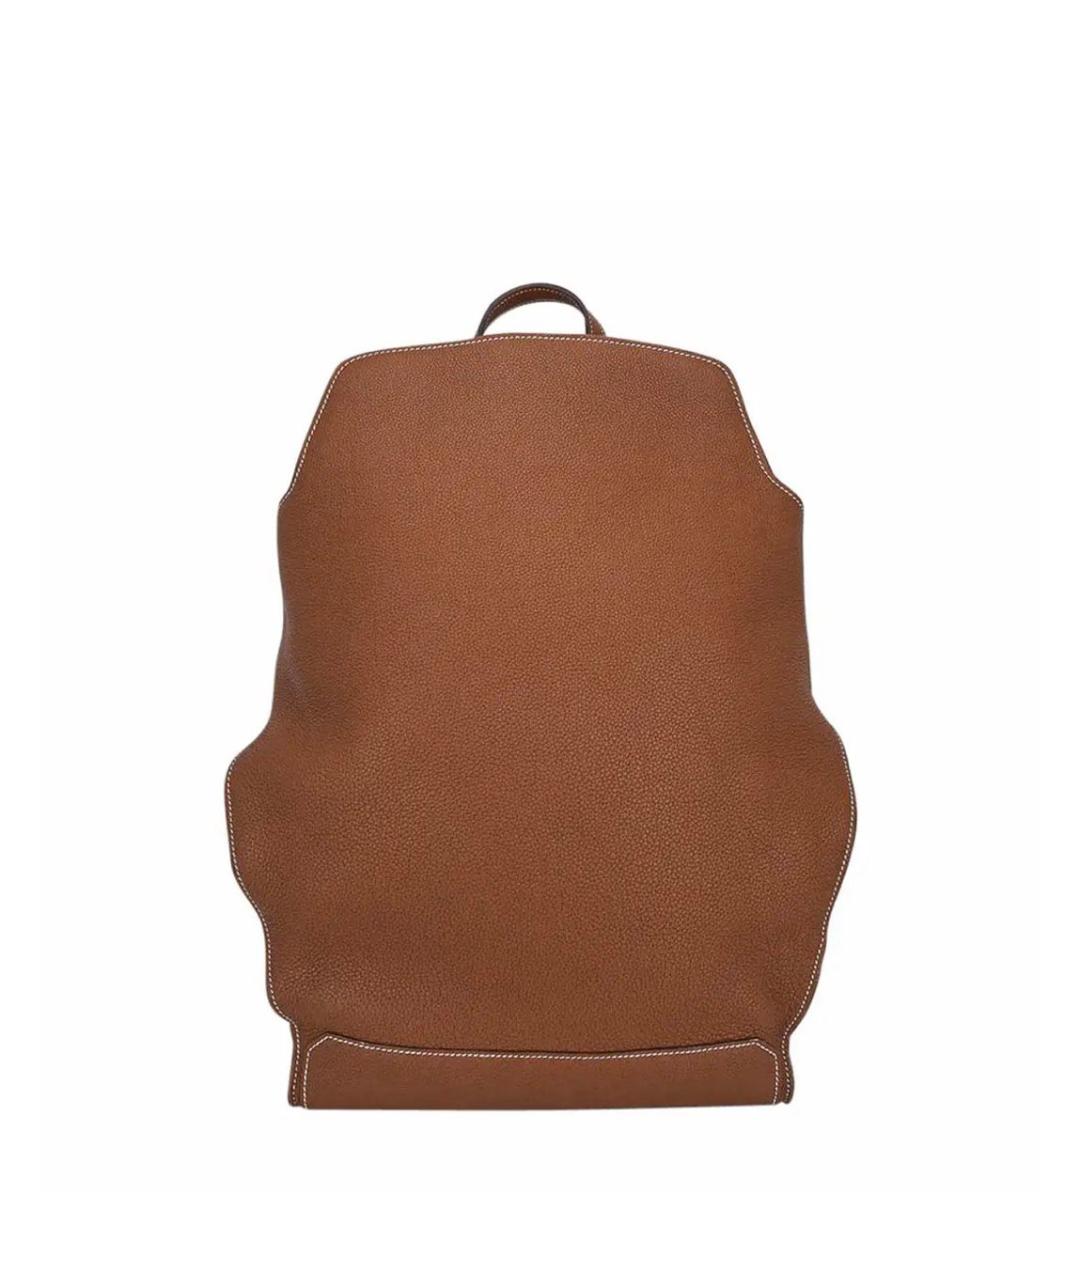 HERMES PRE-OWNED Коричневый кожаный рюкзак, фото 1